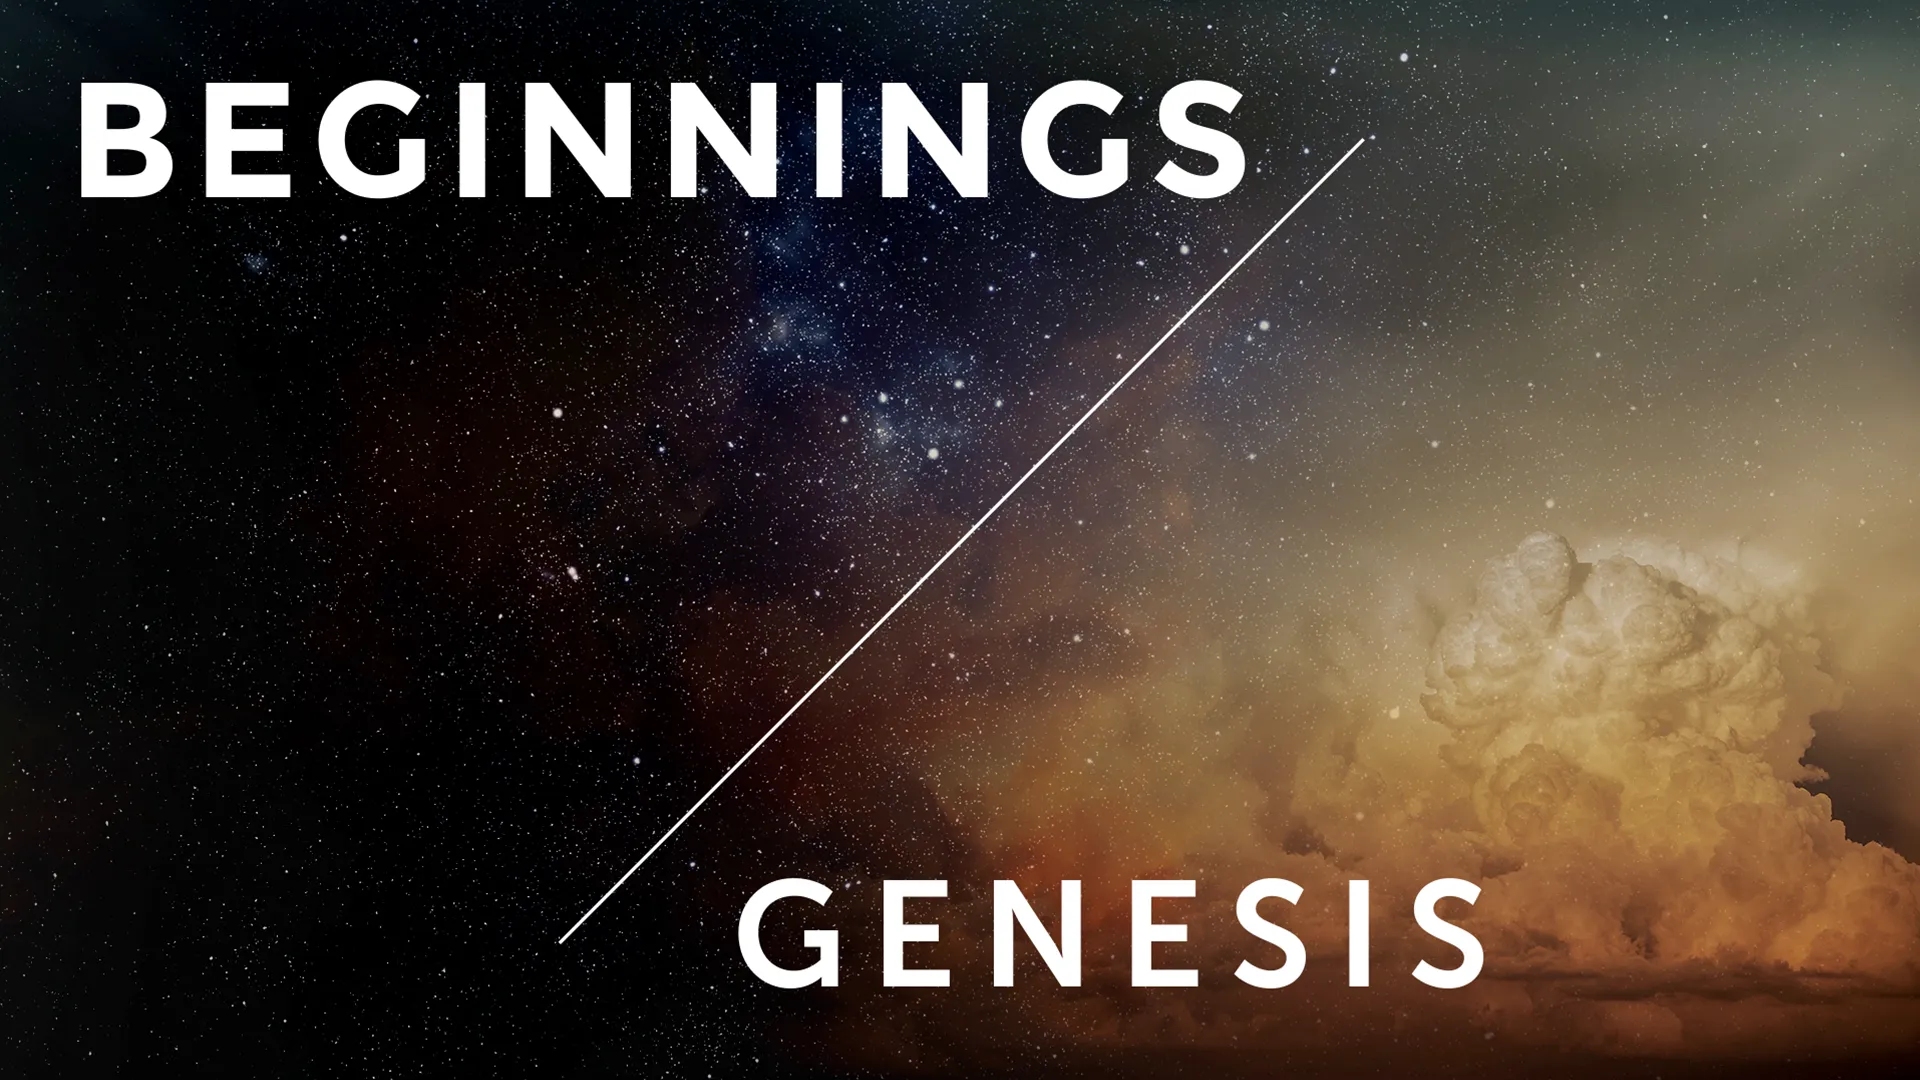 Beginnings: The Book of Genesis